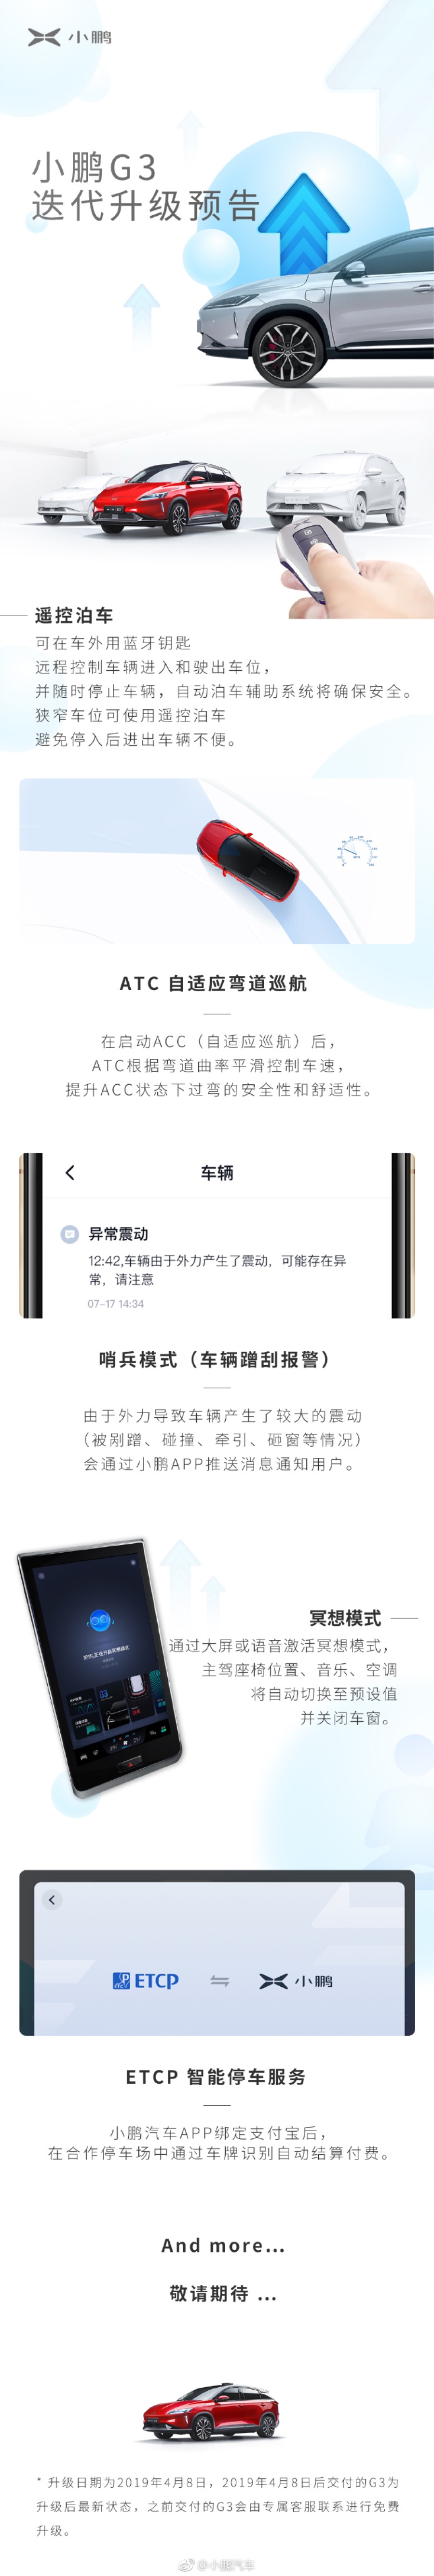 小鹏G3发布迭代升级预告 4月8日开始升级